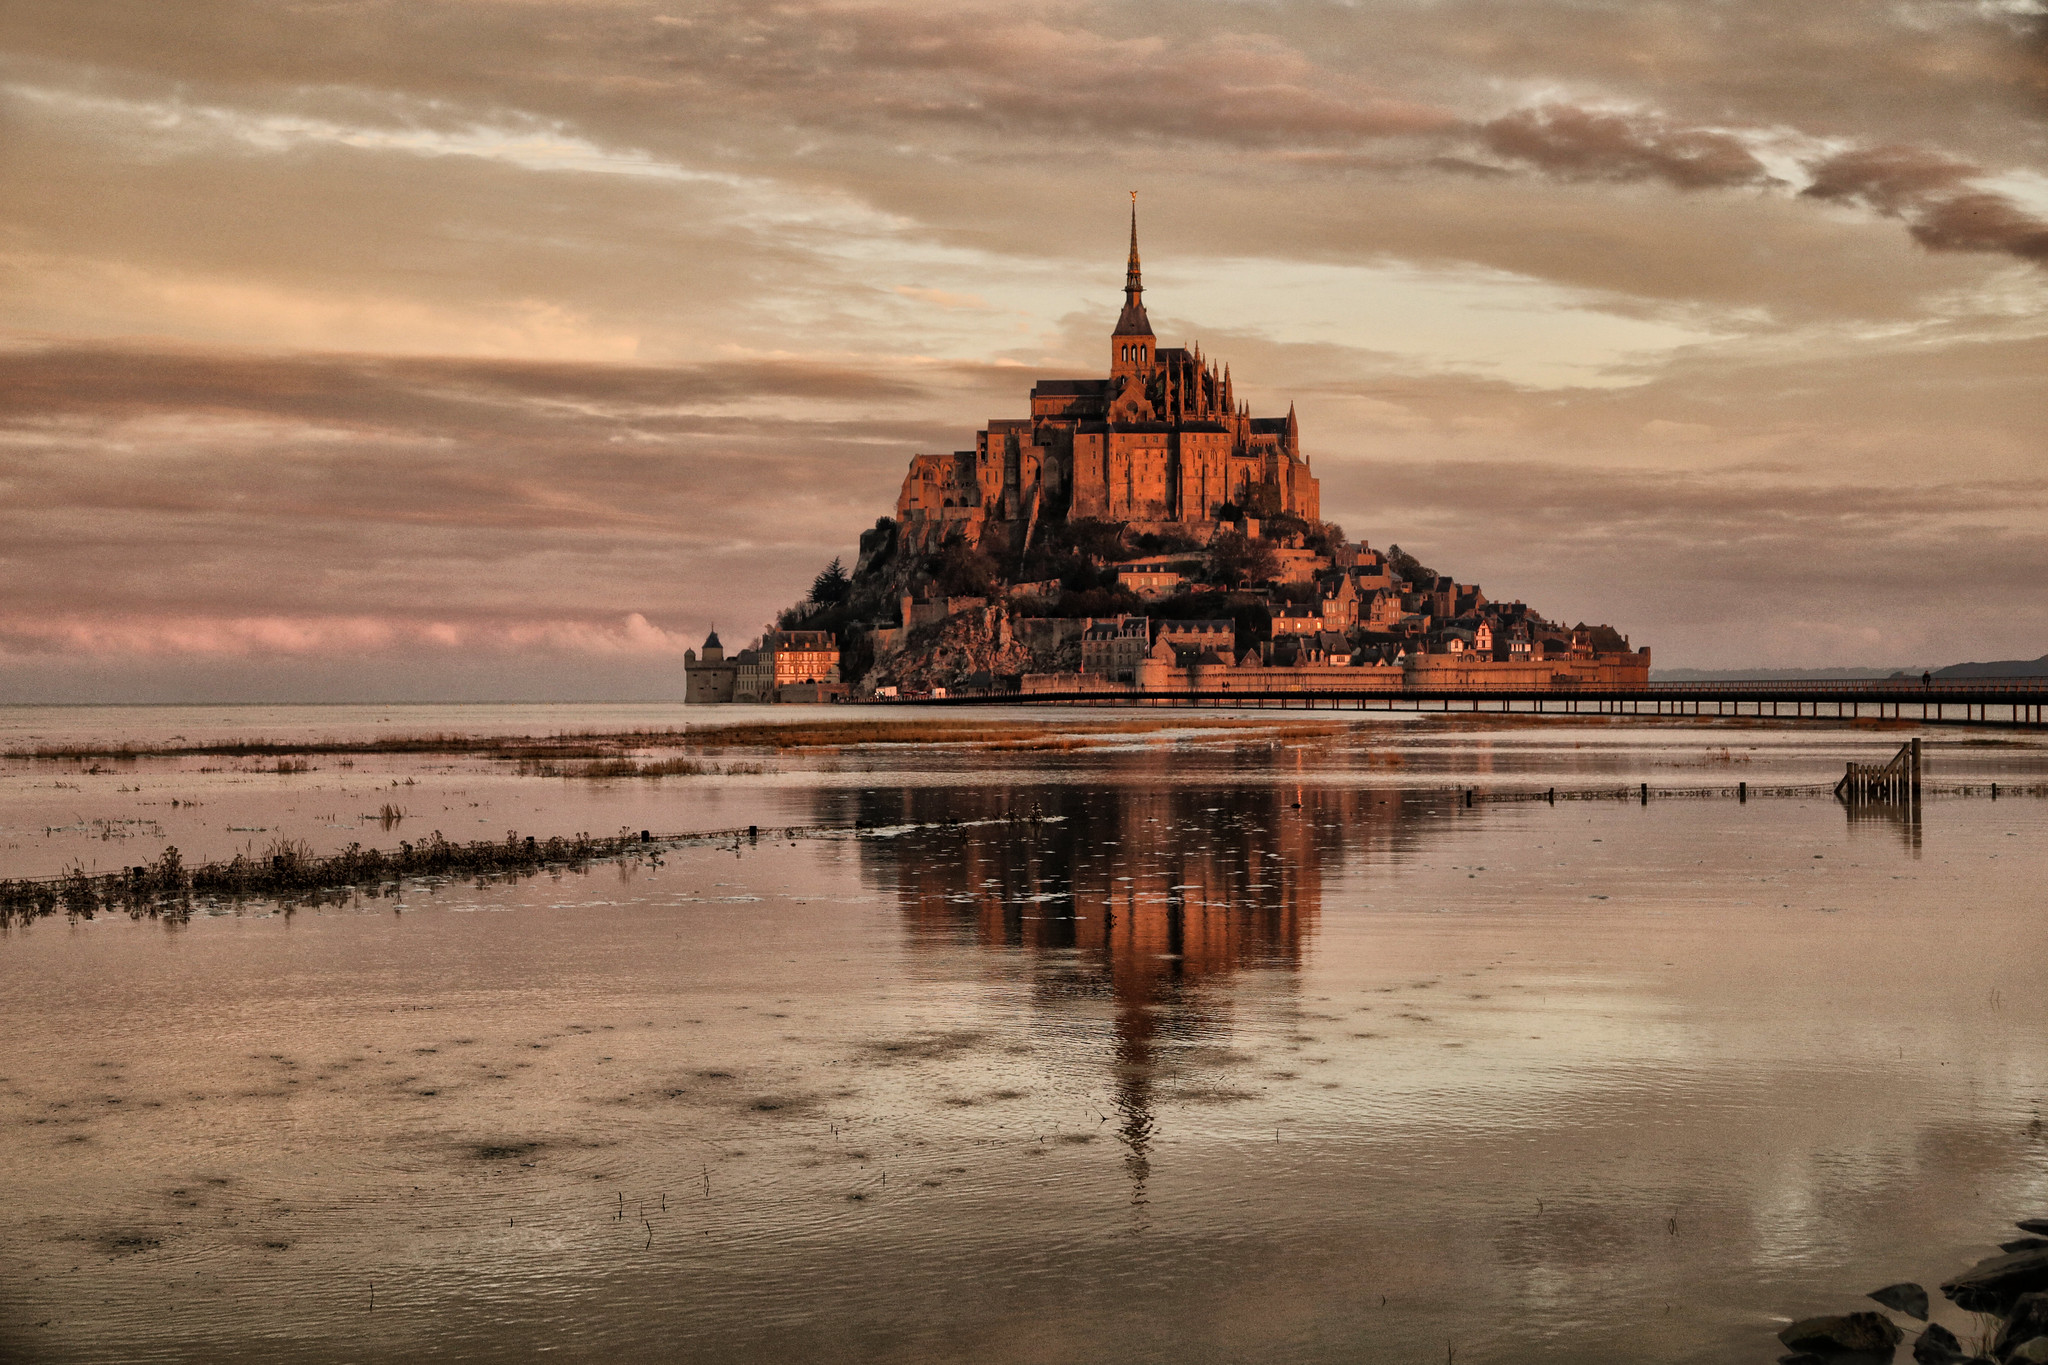 Le Mont Saint-Michel at High tide by erichudson78